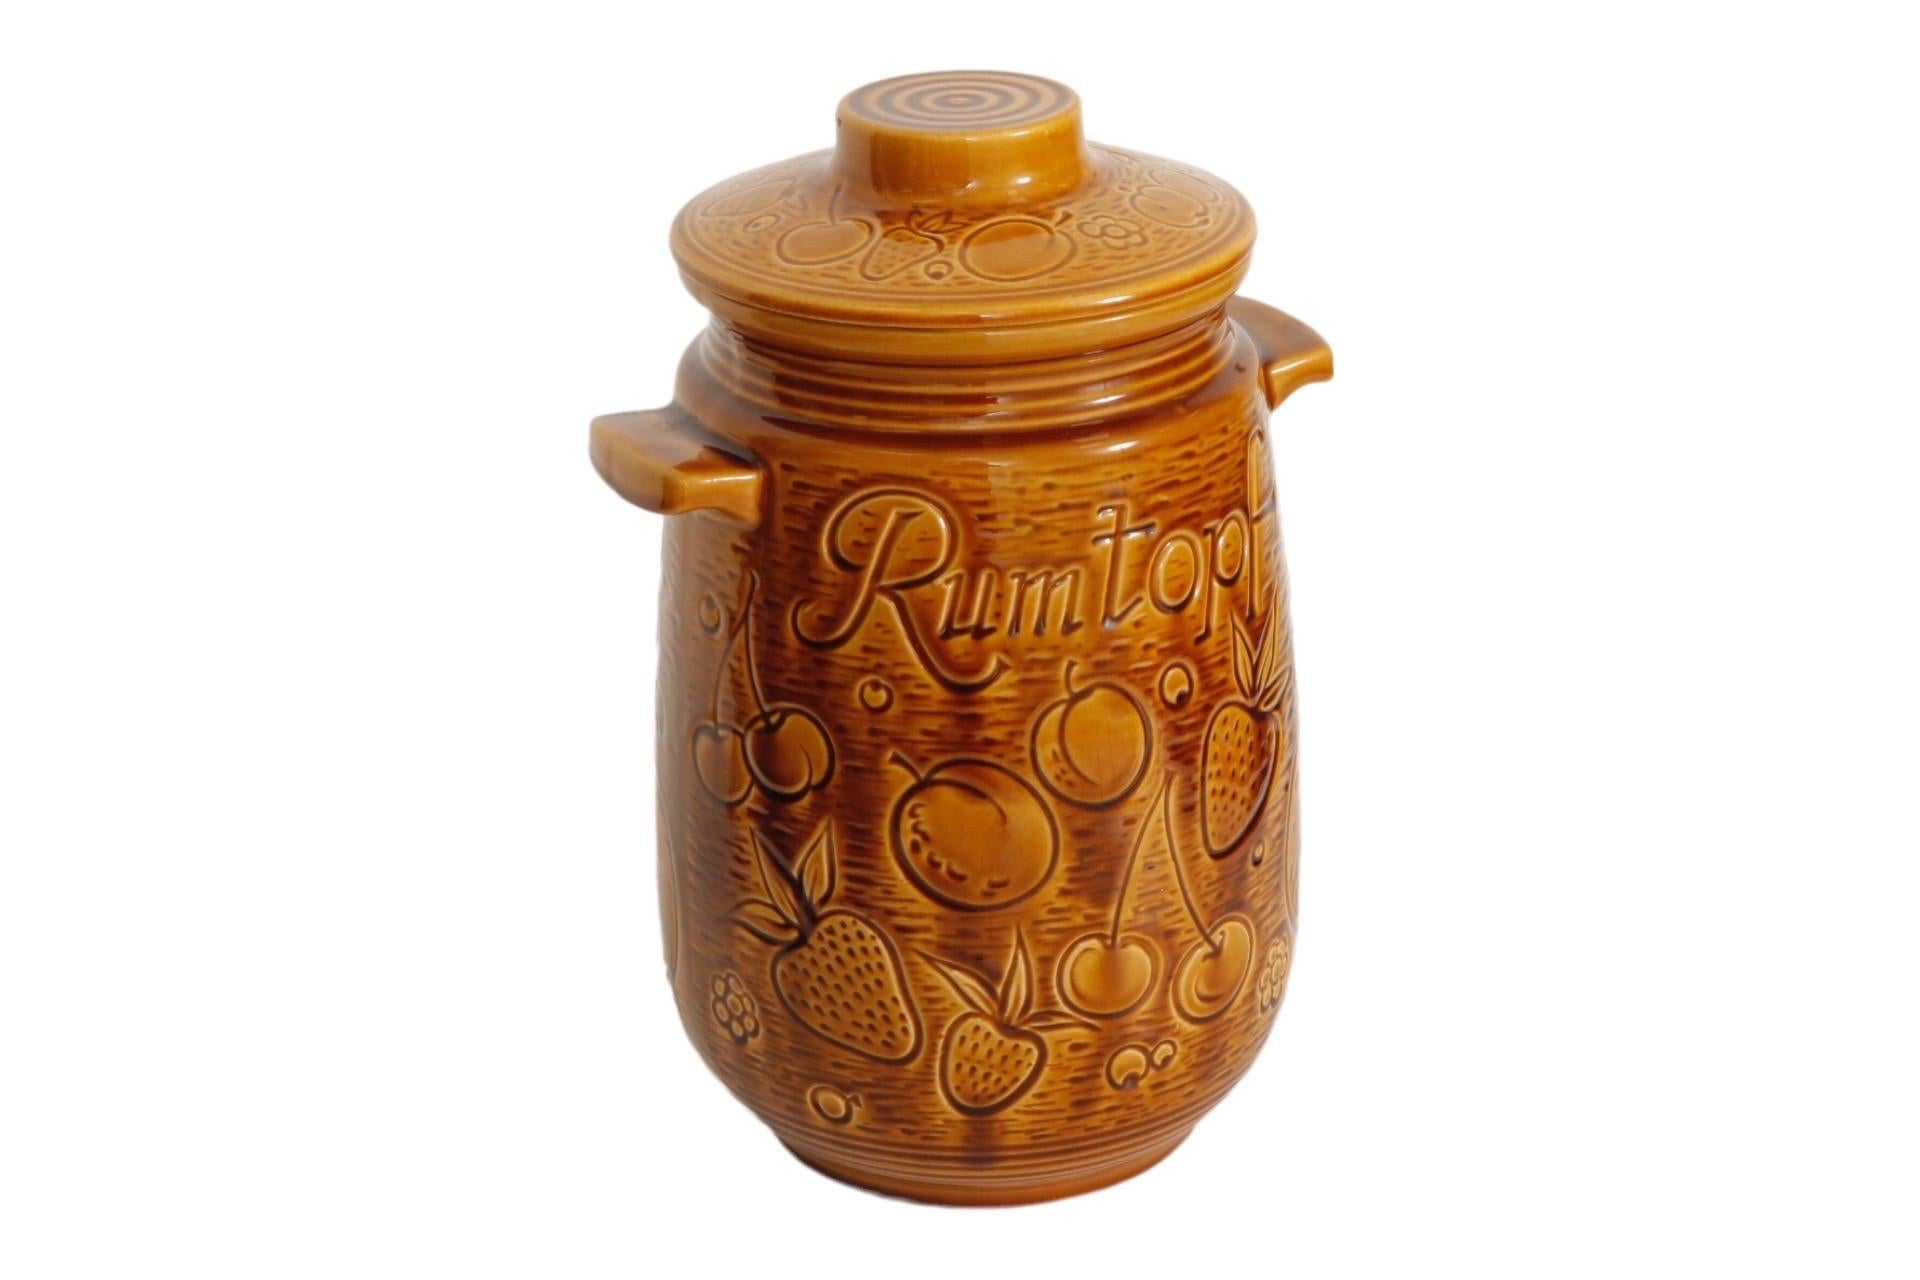 Ein original Scheurich Keramik Rumtopf. Verziert mit verschiedenen Sommerfrüchten, die sich rund um den Topf und auf dem Deckel befinden. Der Rumtopf ist auf beiden Seiten beschriftet und der Topf ist goldbraun glasiert. Die Scheurich-Keramikmarke